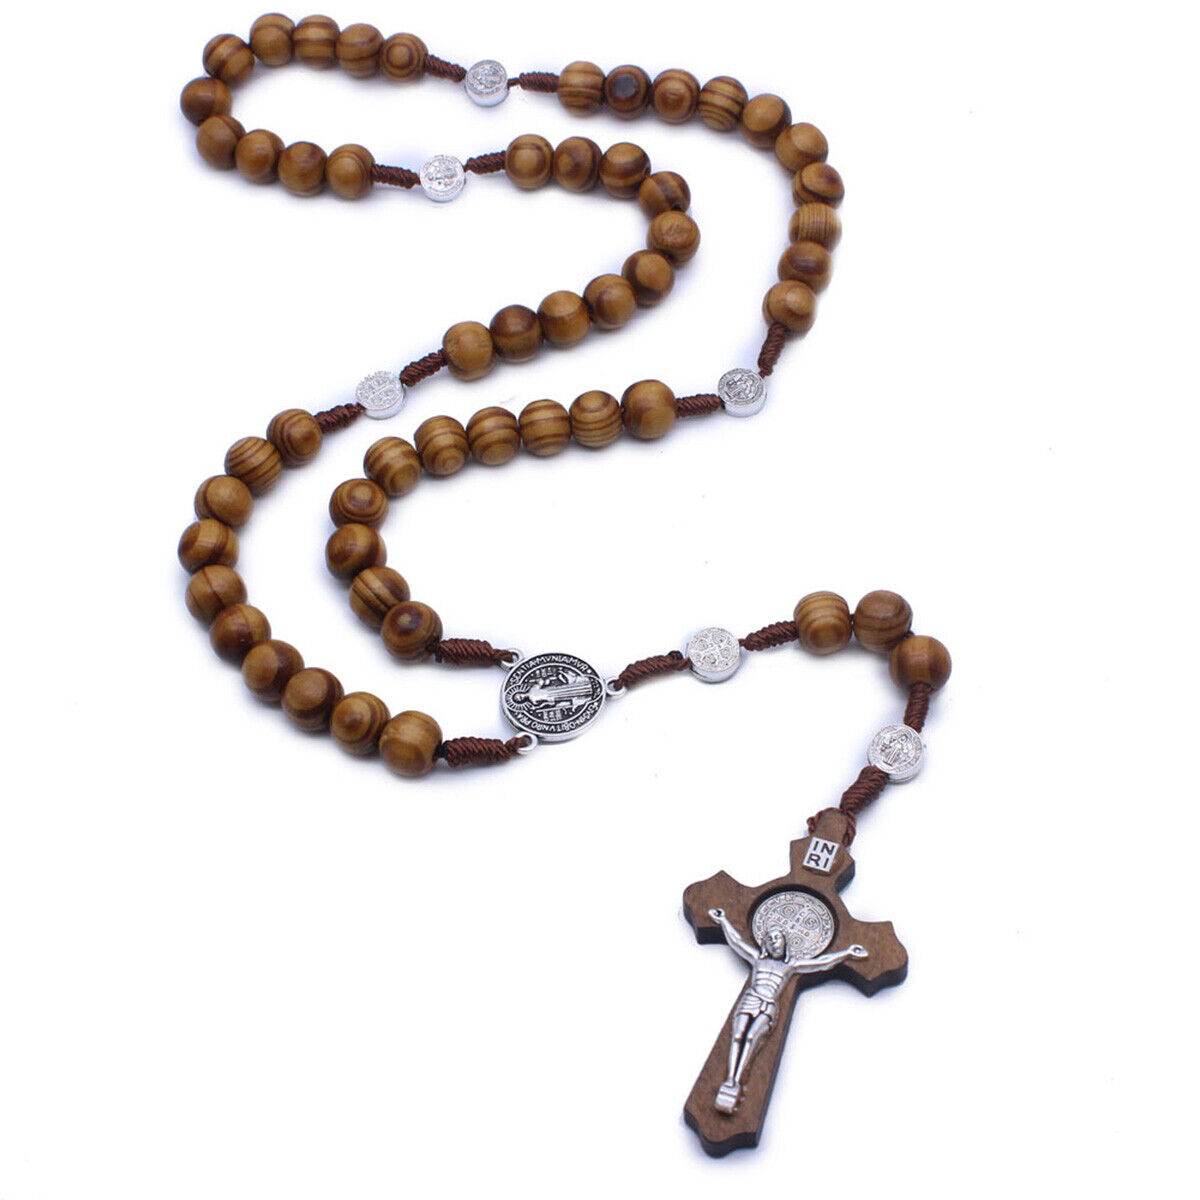 Saint Benedict Olive Wood Beads Rosary Cross Catholic Pendant Necklace Charm